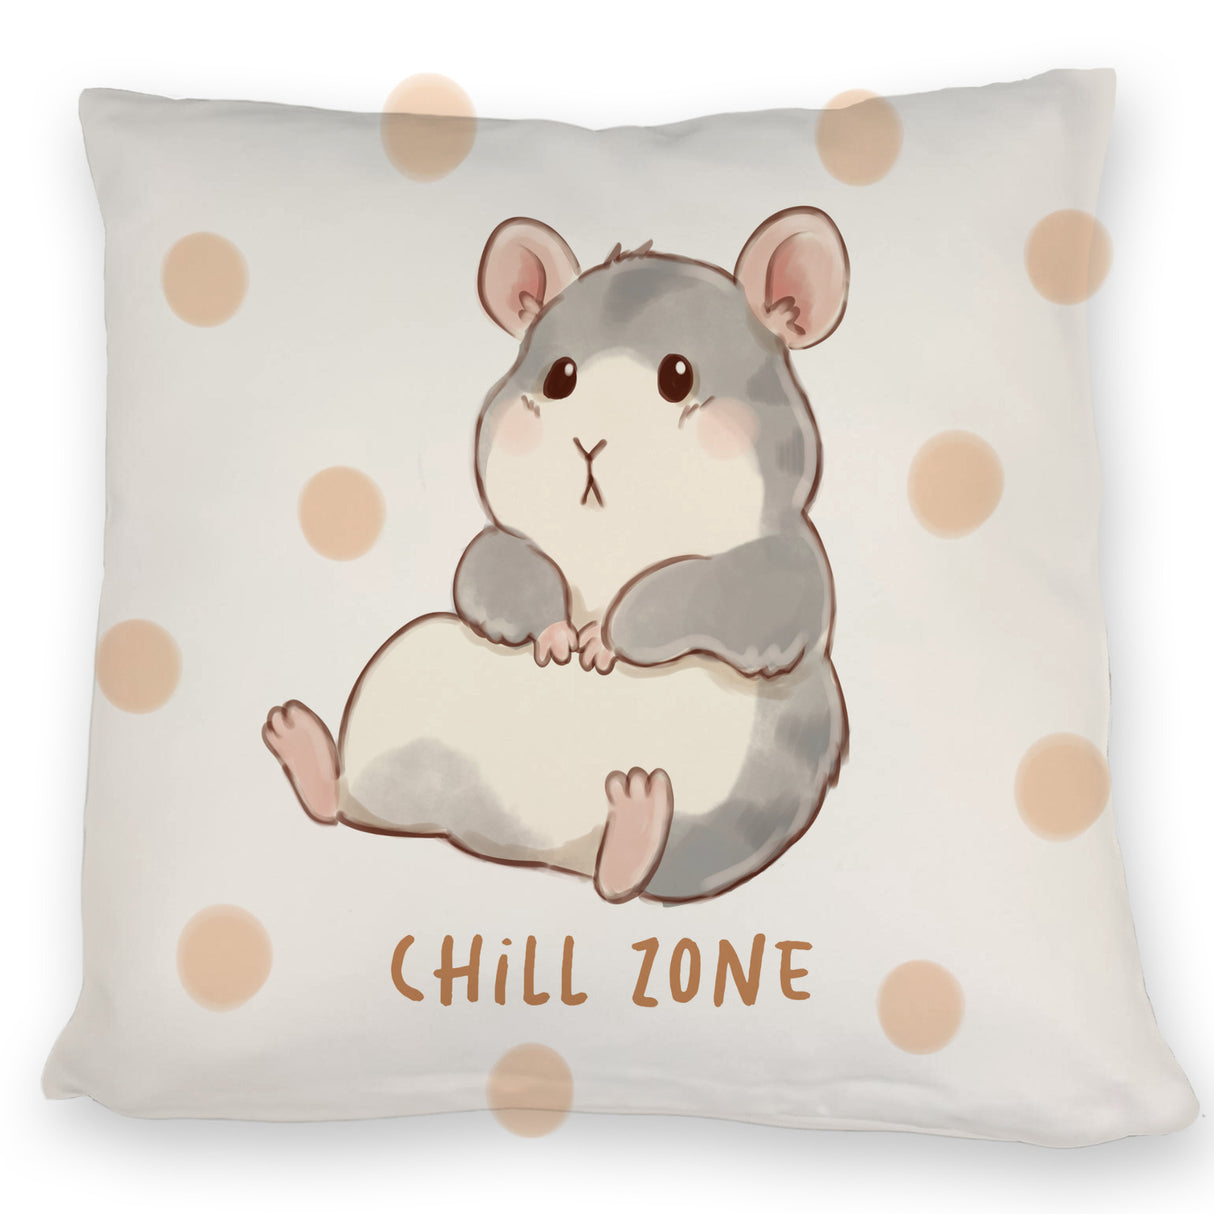 Hamster Kissen mit Spruch Chill Zone